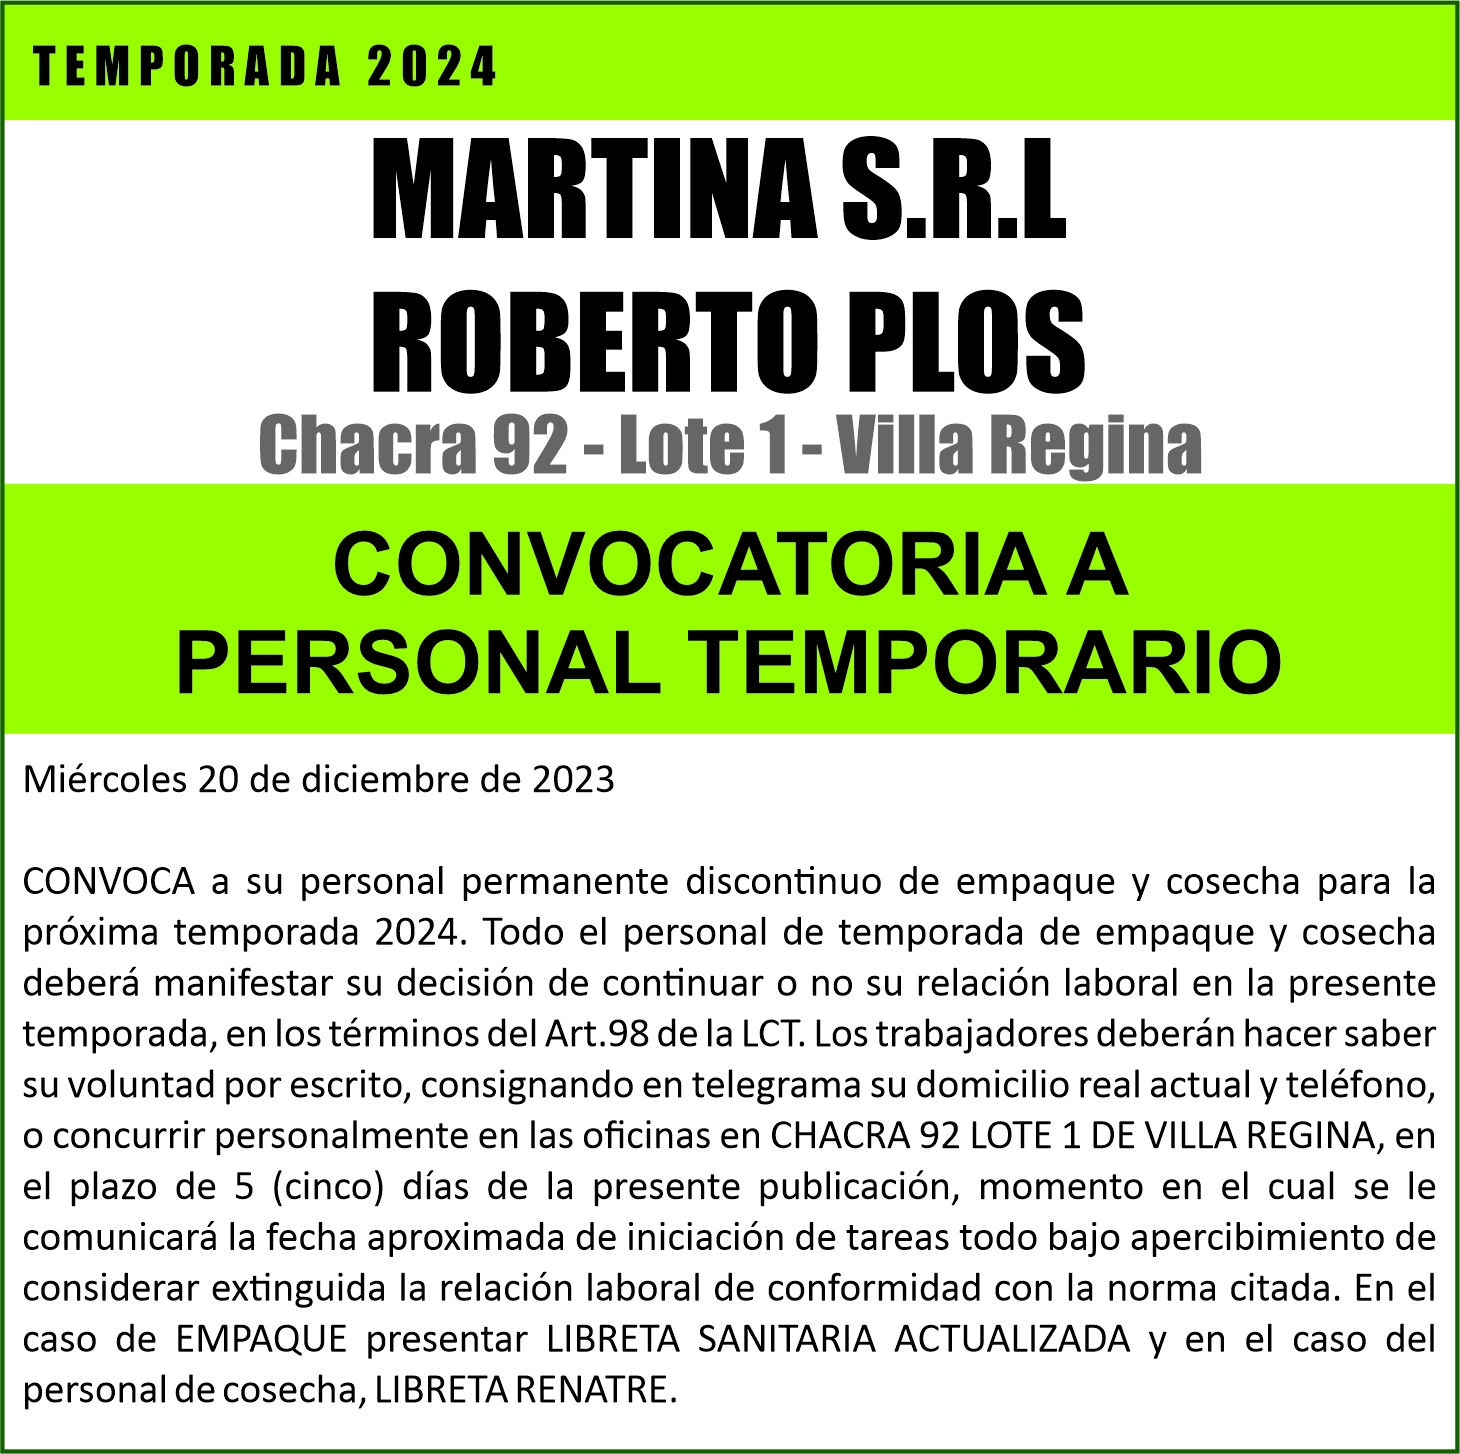 MARTINA S.R.L ROBERTO PLOS convoca al personal de temporada 2024